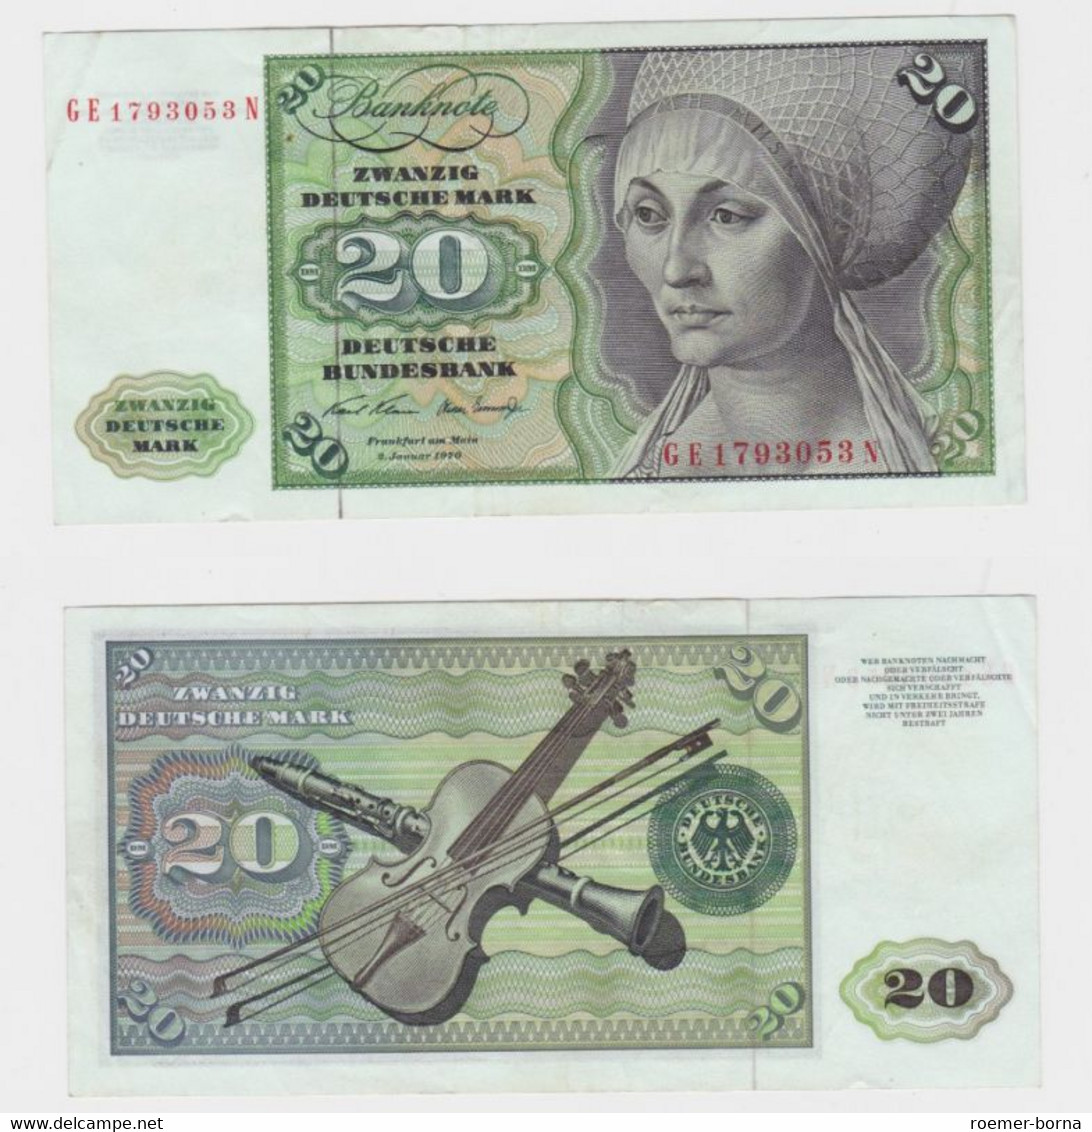 T145850 Banknote 20 DM Deutsche Mark Ro. 271b Schein 2.Jan. 1970 KN GE 1793053 N - 20 Deutsche Mark